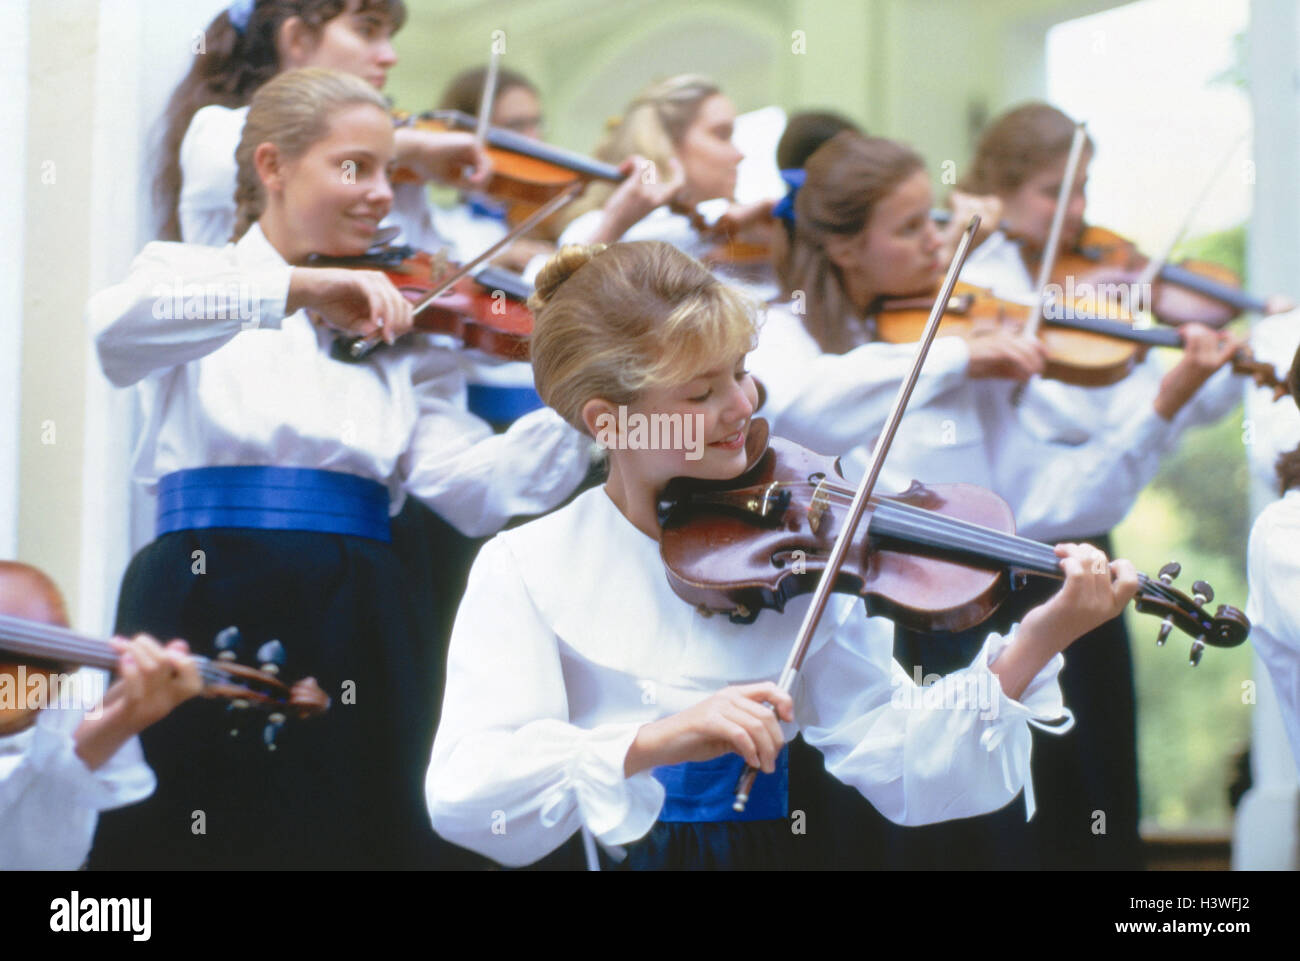 Orchester, Jugendliche, Geige spielen!!! NUR REDAKTIONELL!!! Ensemble, Teenager, Gruppe, Mädchen, junge, Instrument, Saiteninstrument, musizieren, Musik, klassisch, Klassik, klassische Musik, auftritt, Konzert, Einheit Kleidung außerhalb Stockfoto